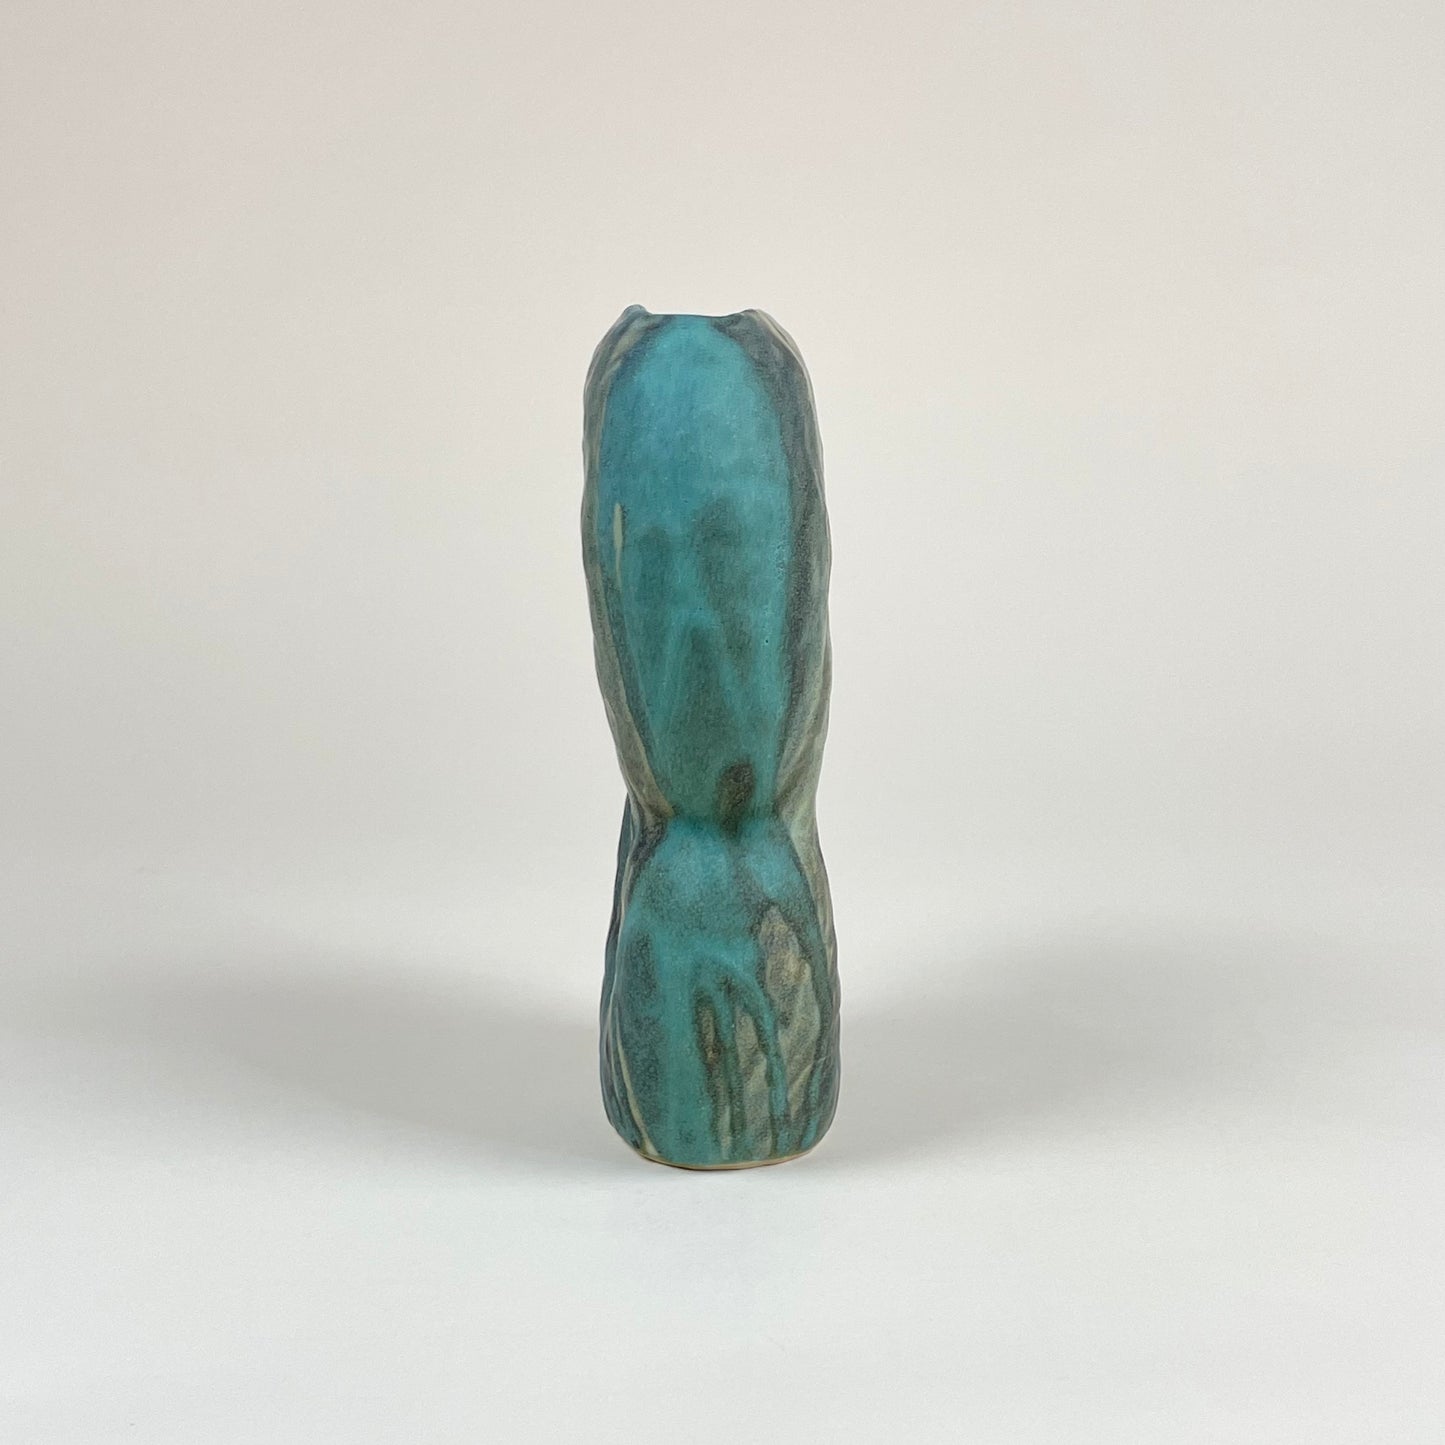 Green ceramic vase by Malwina Kleparska